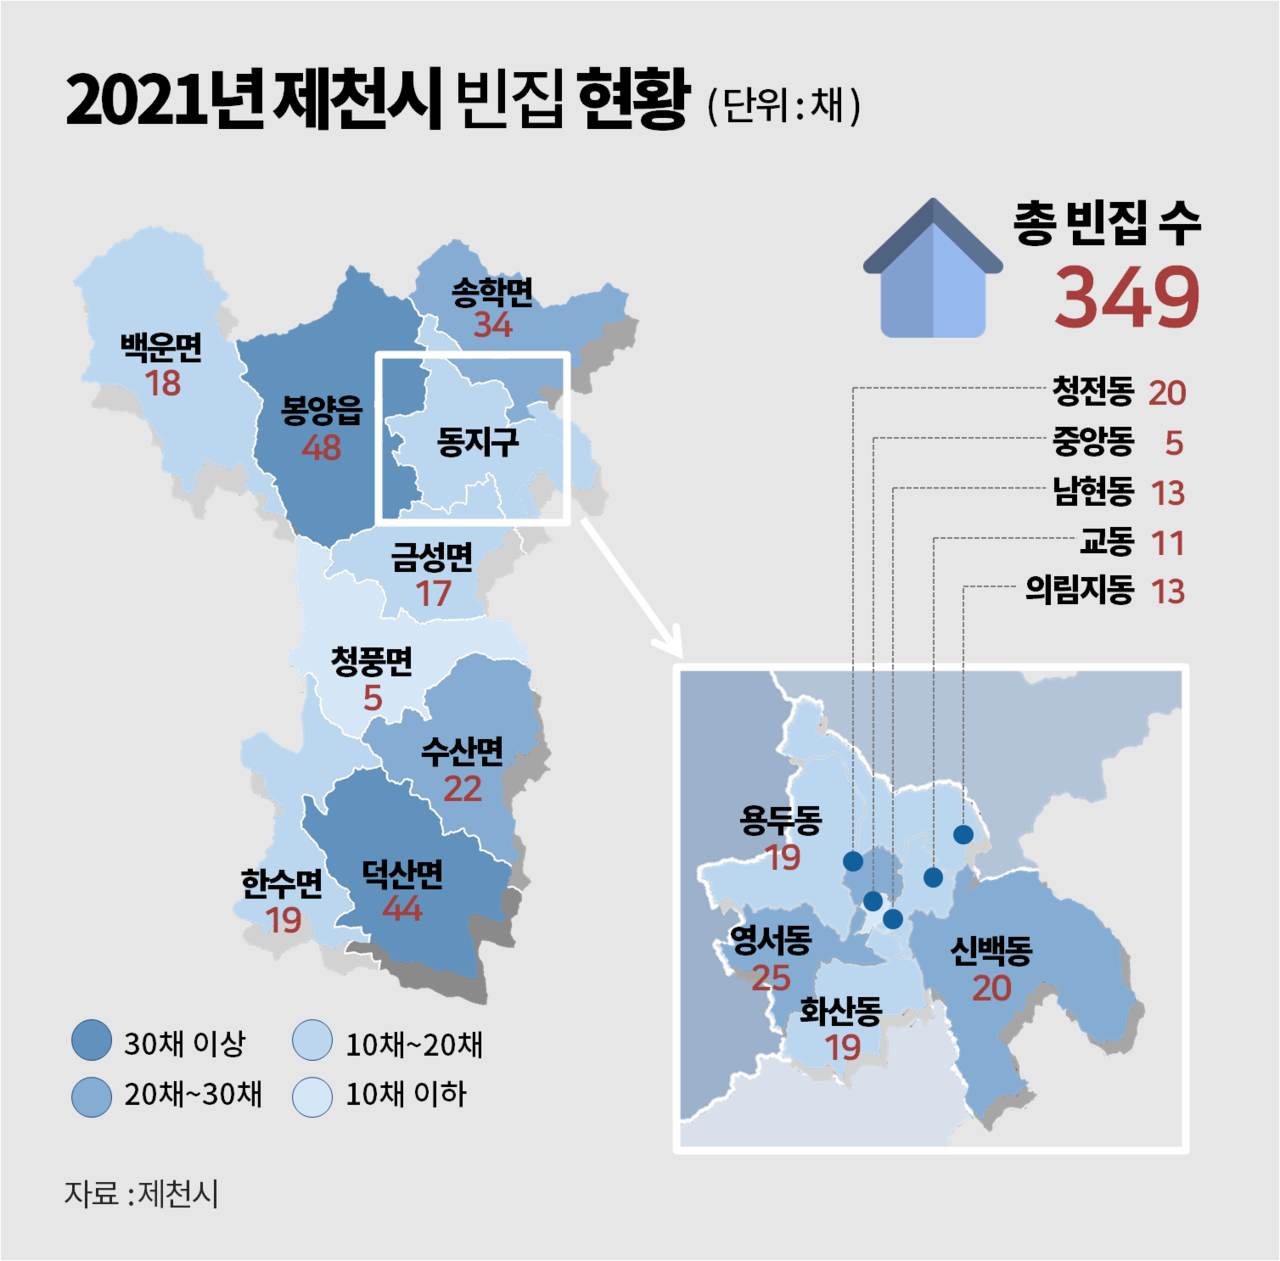 제천시 2021년 빈집실태조사 현황. 그래픽 김다연